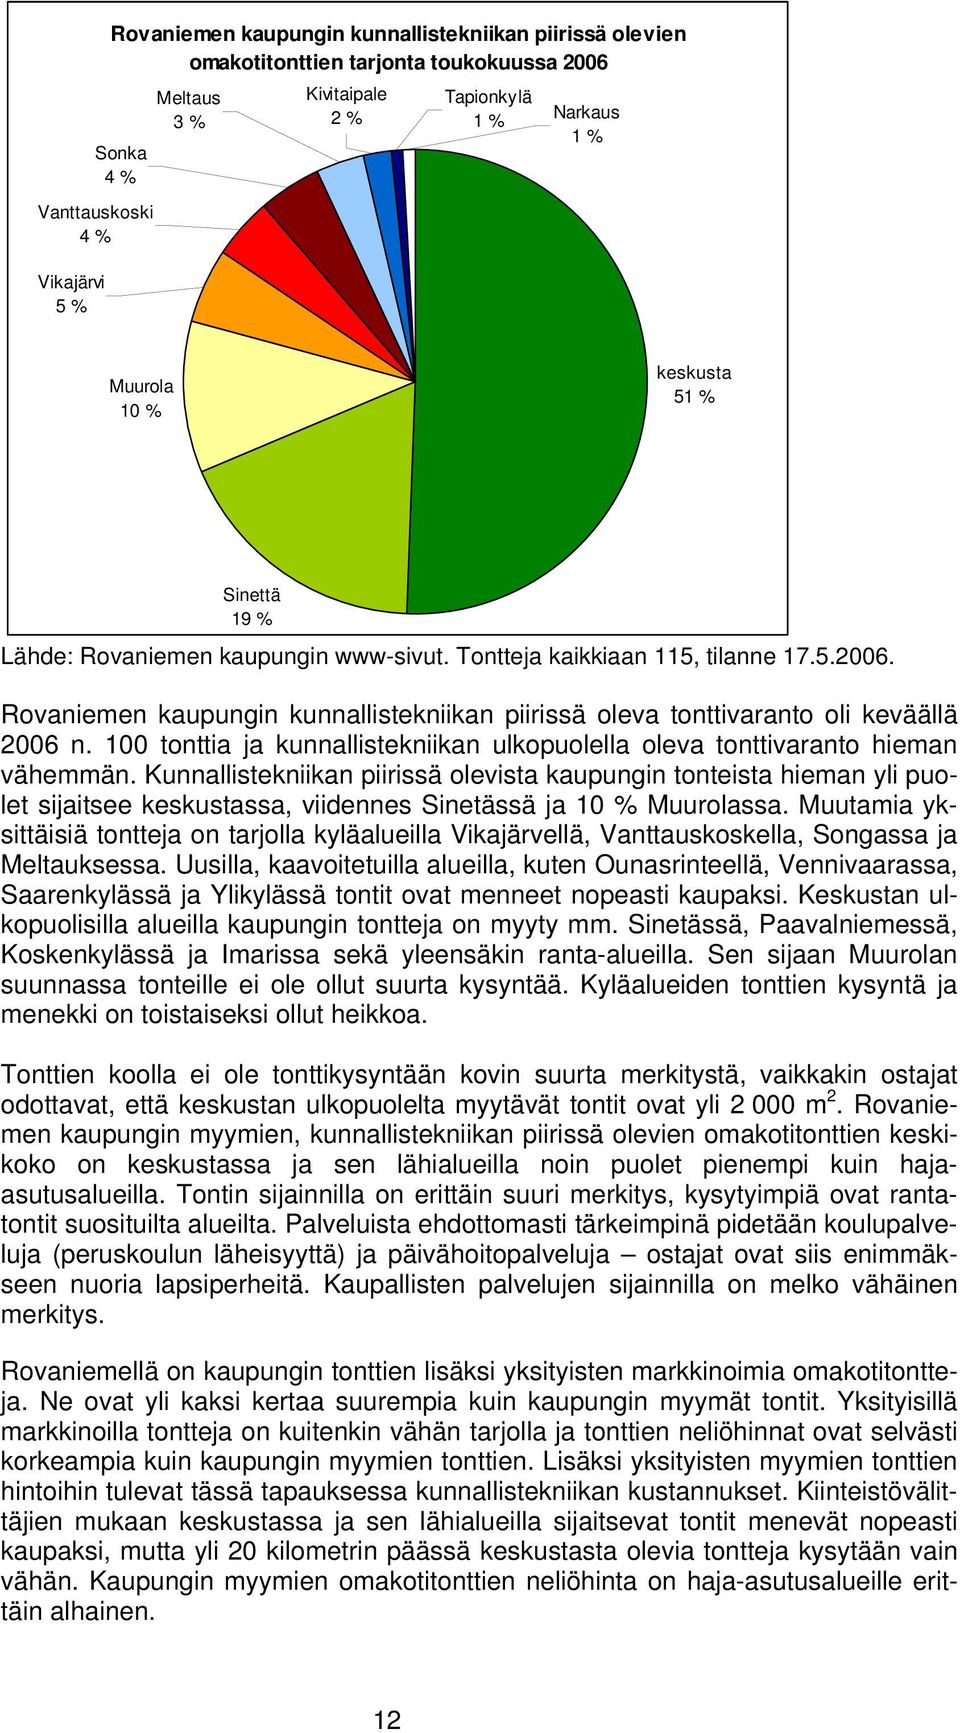 Rovaniemen kaupungin kunnallistekniikan piirissä oleva tonttivaranto oli keväällä 2006 n. 100 tonttia ja kunnallistekniikan ulkopuolella oleva tonttivaranto hieman vähemmän.